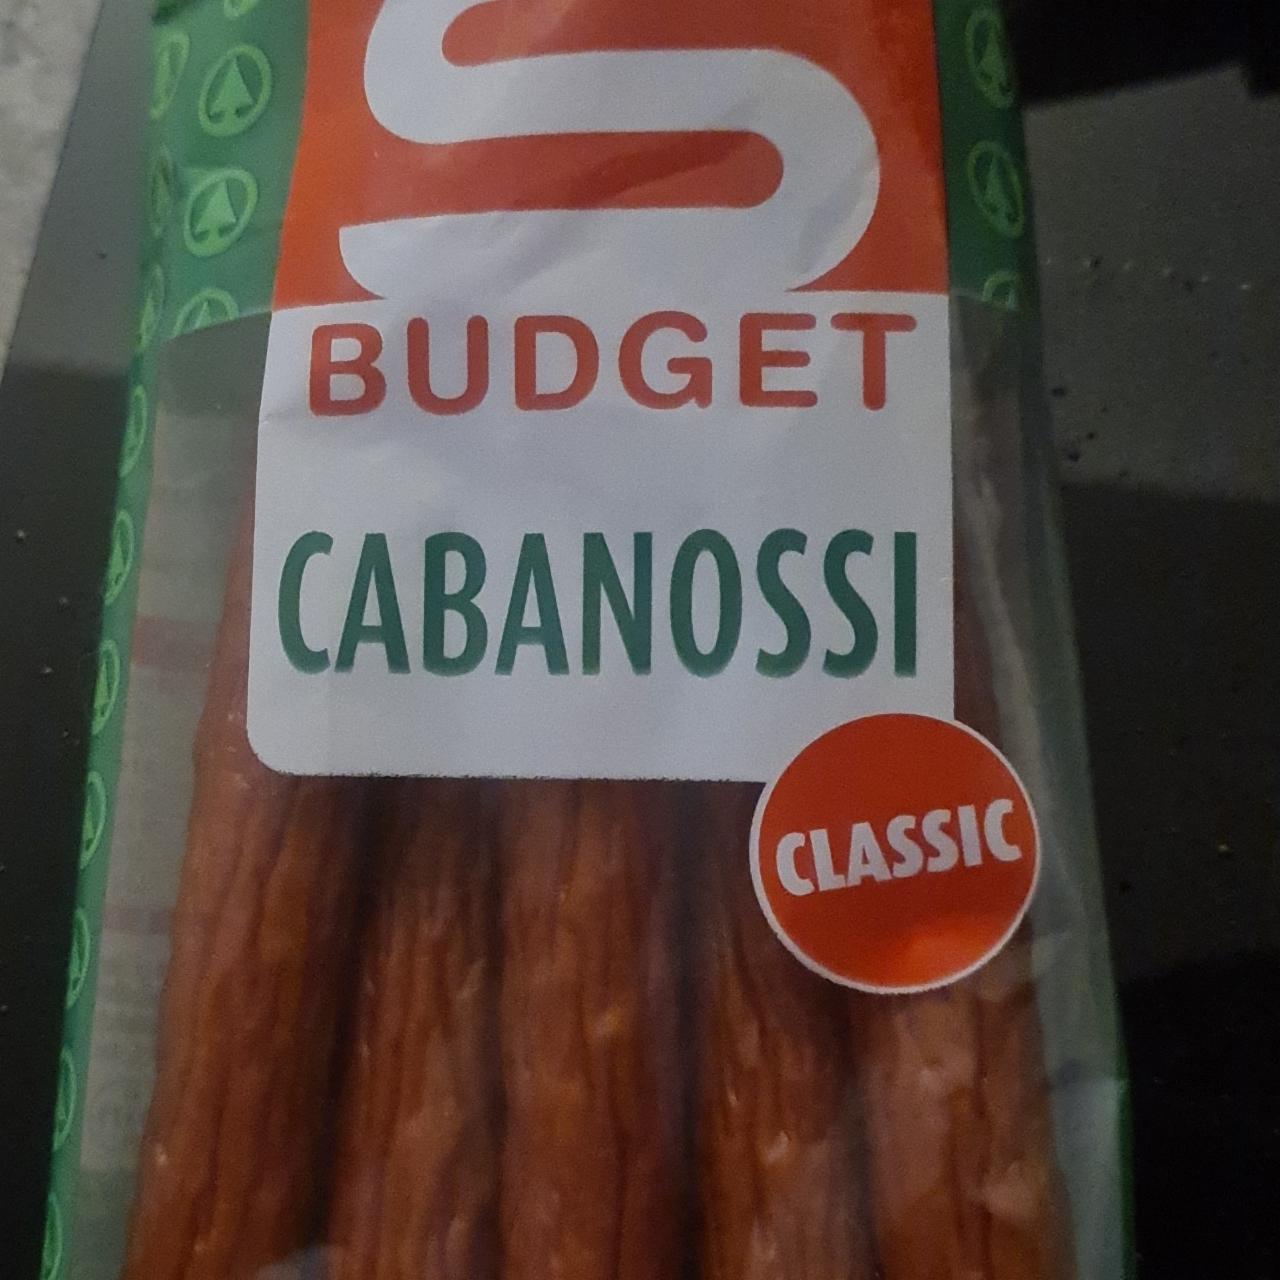 Fotografie - Cabanossi classic S Budget